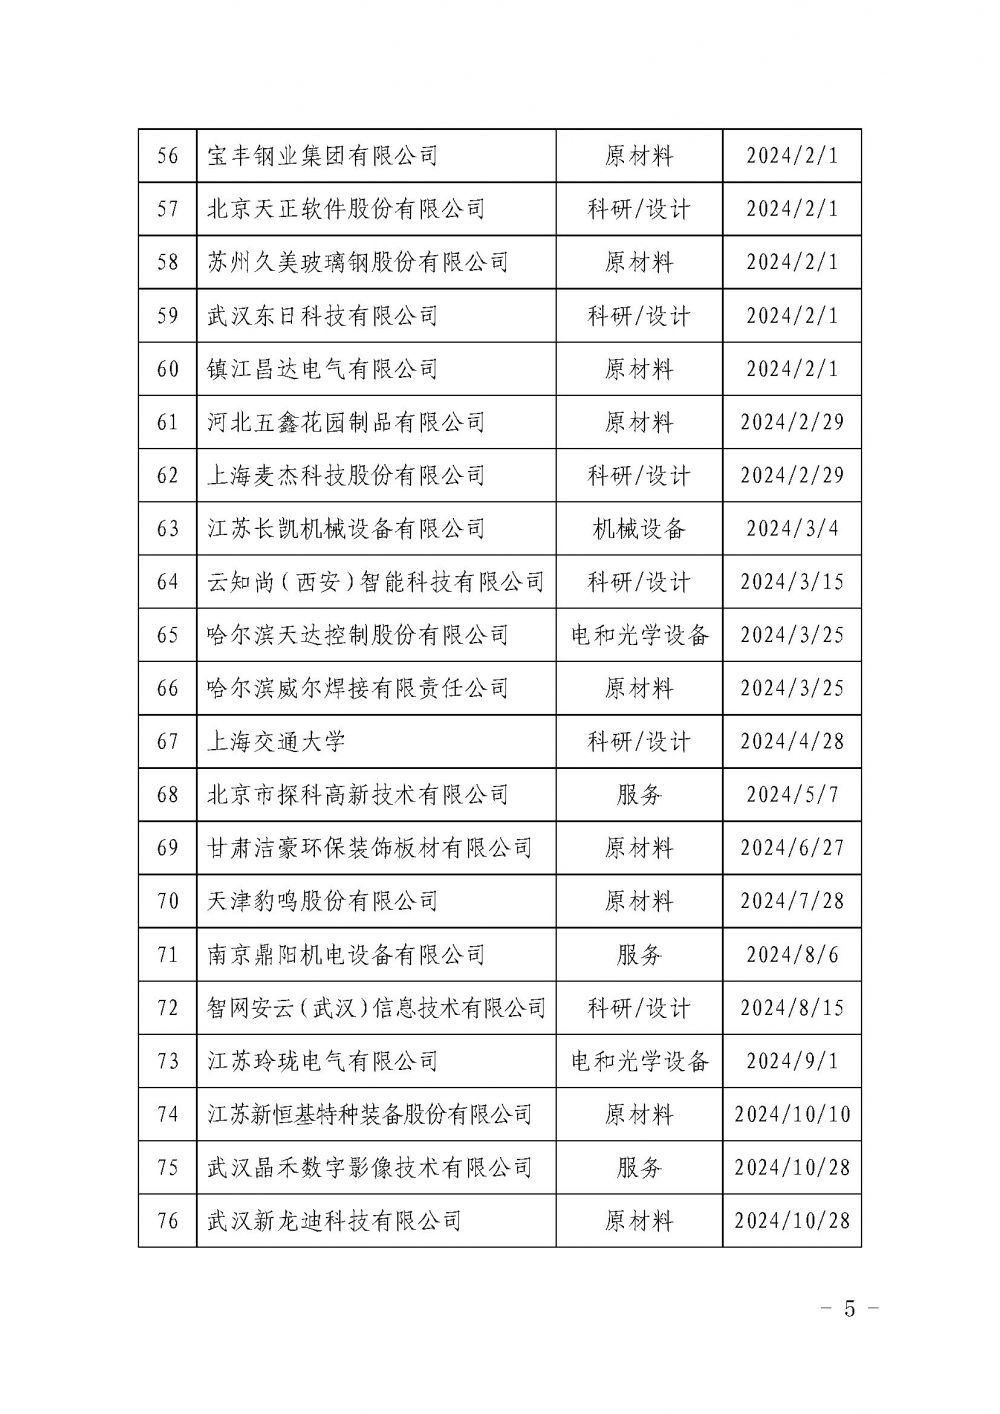 关于发布中国核能行业协会核能行业第十批合格供应商名录的公告_页面_5.jpg